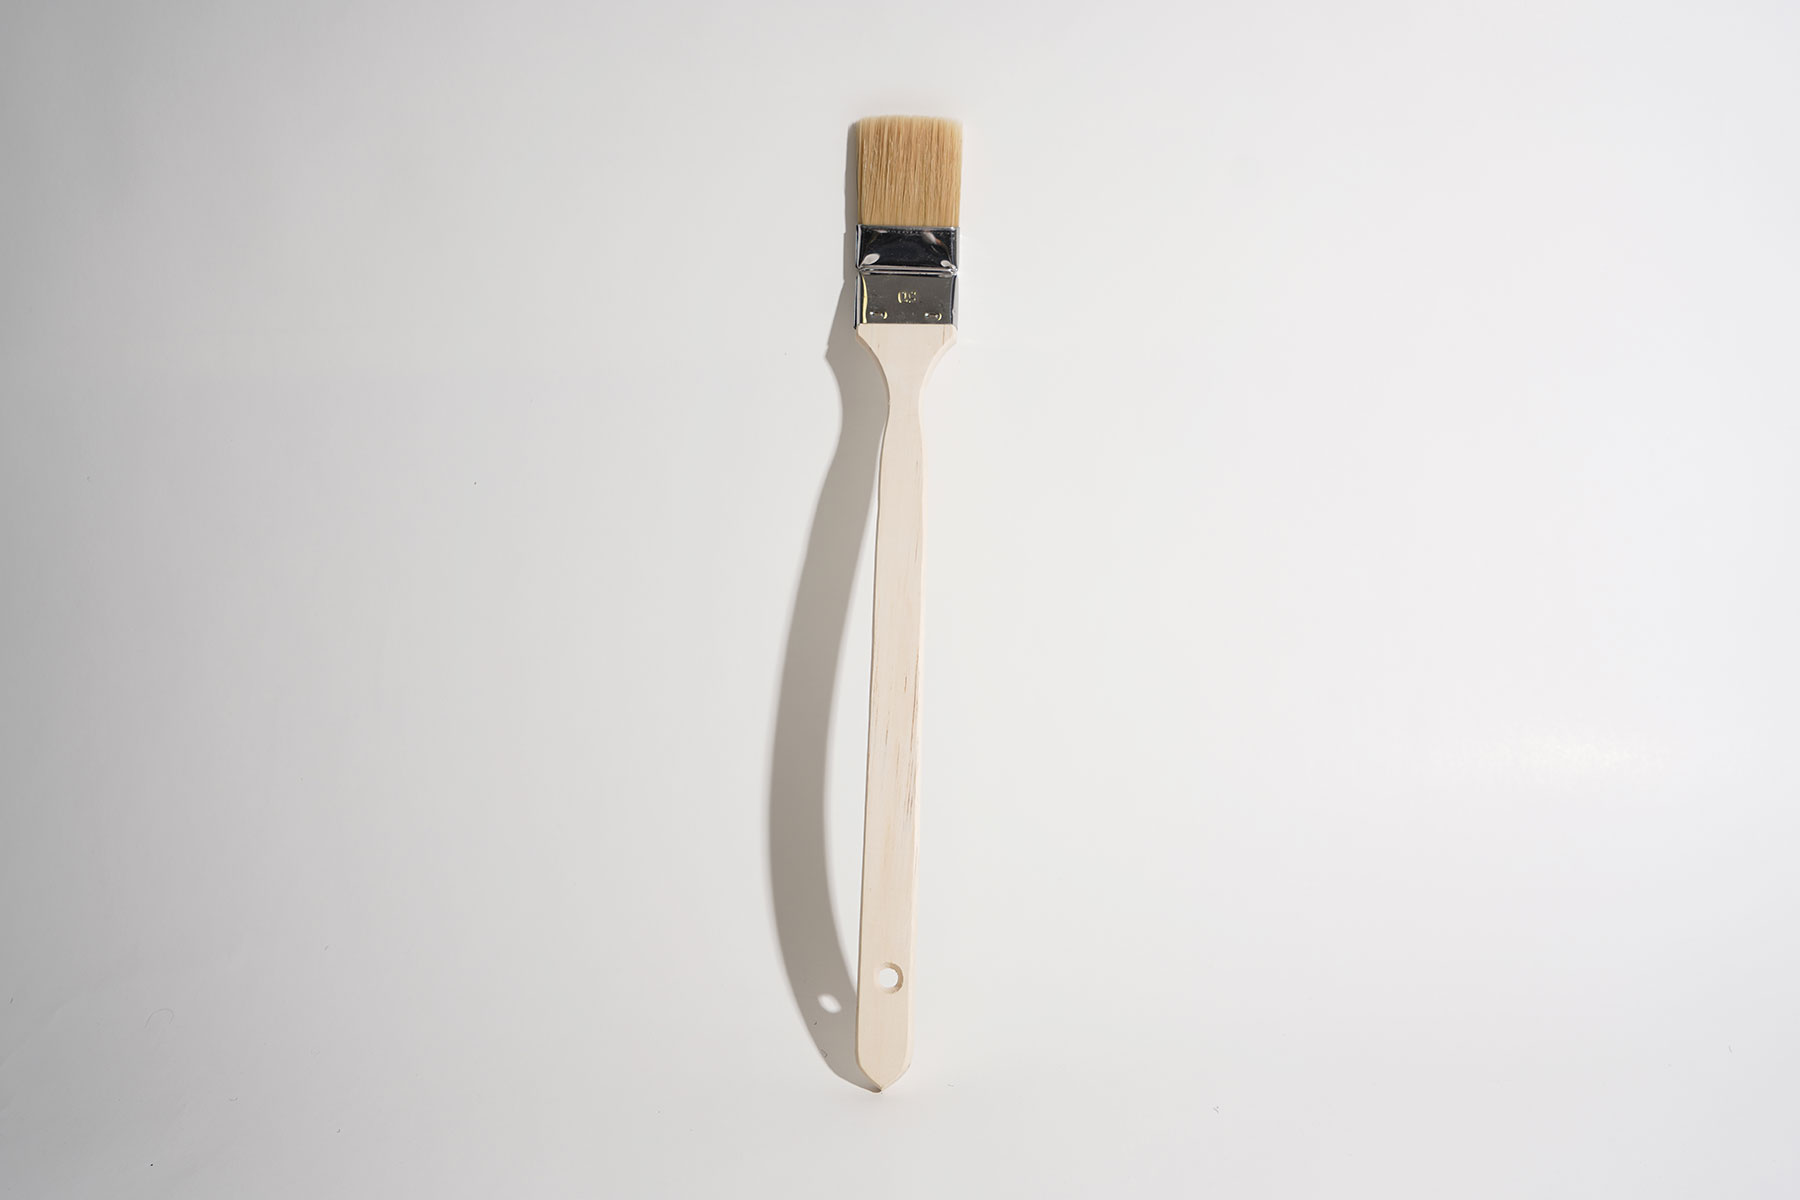             Pincel de esquina de 5cm, mango largo de madera para trabajos de pintura
        